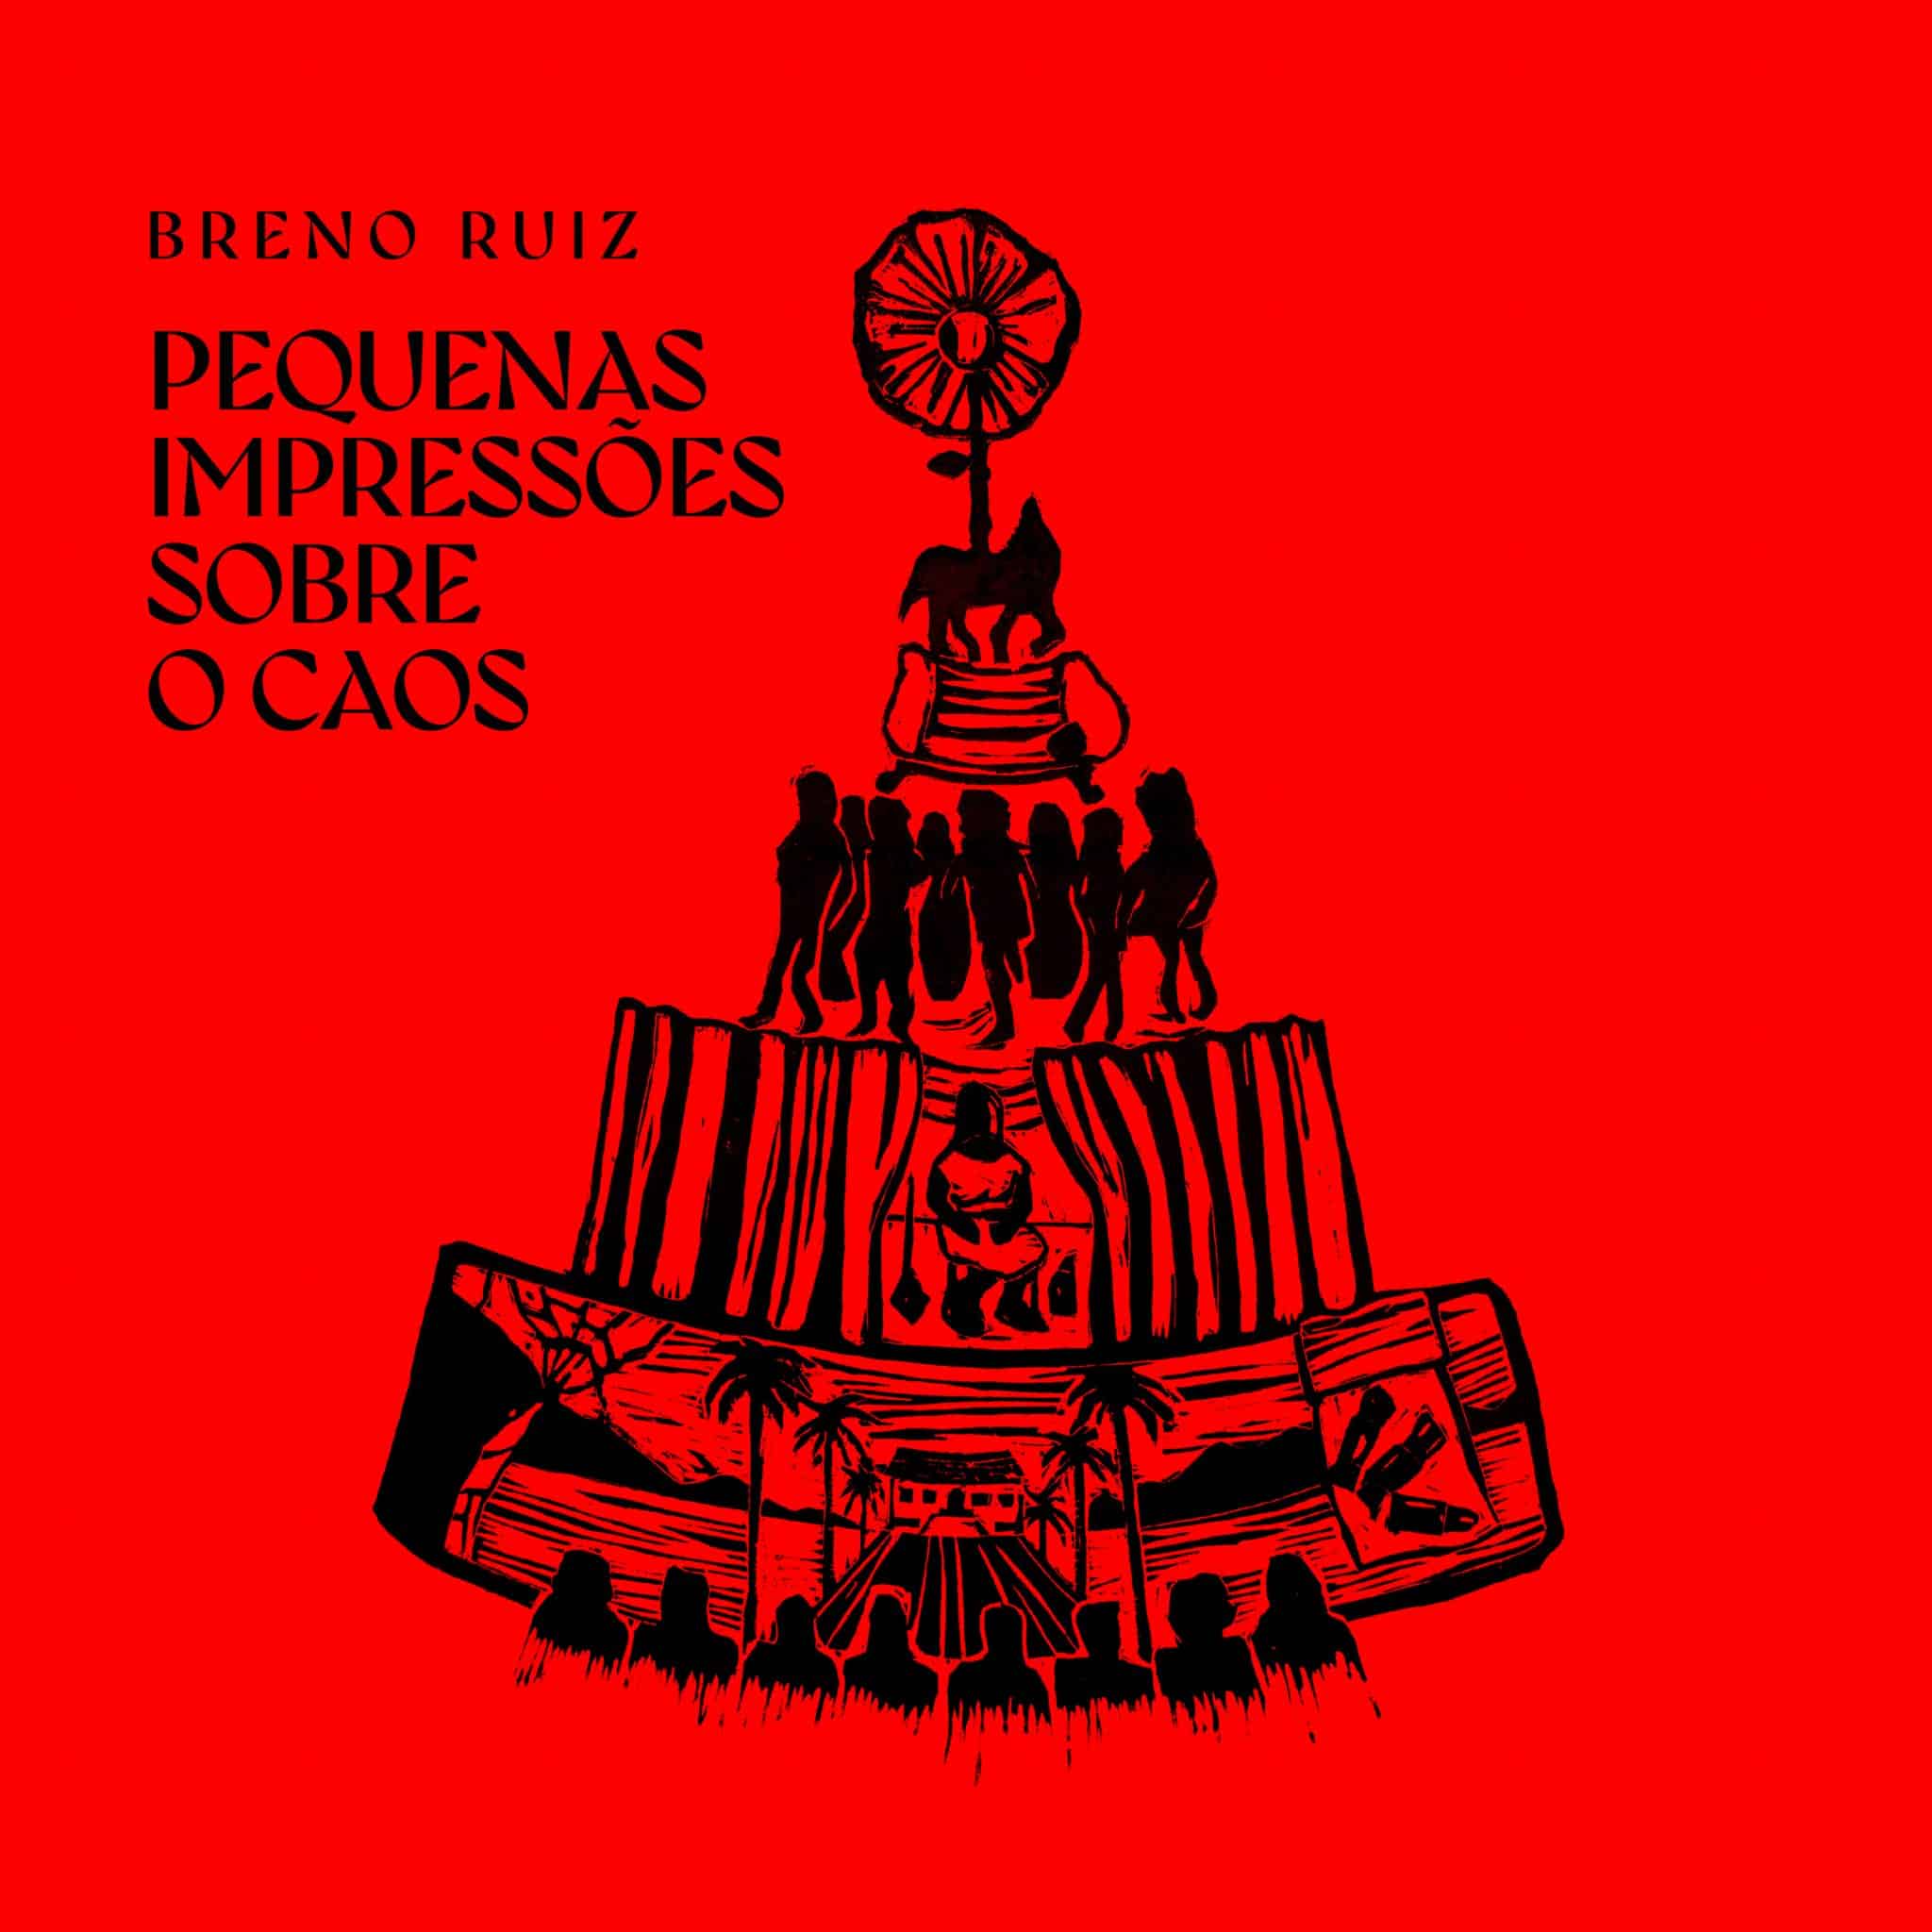 revistaprosaversoearte.com - Breno Ruiz lança álbum "Pequenas Impressões sobre o caos"